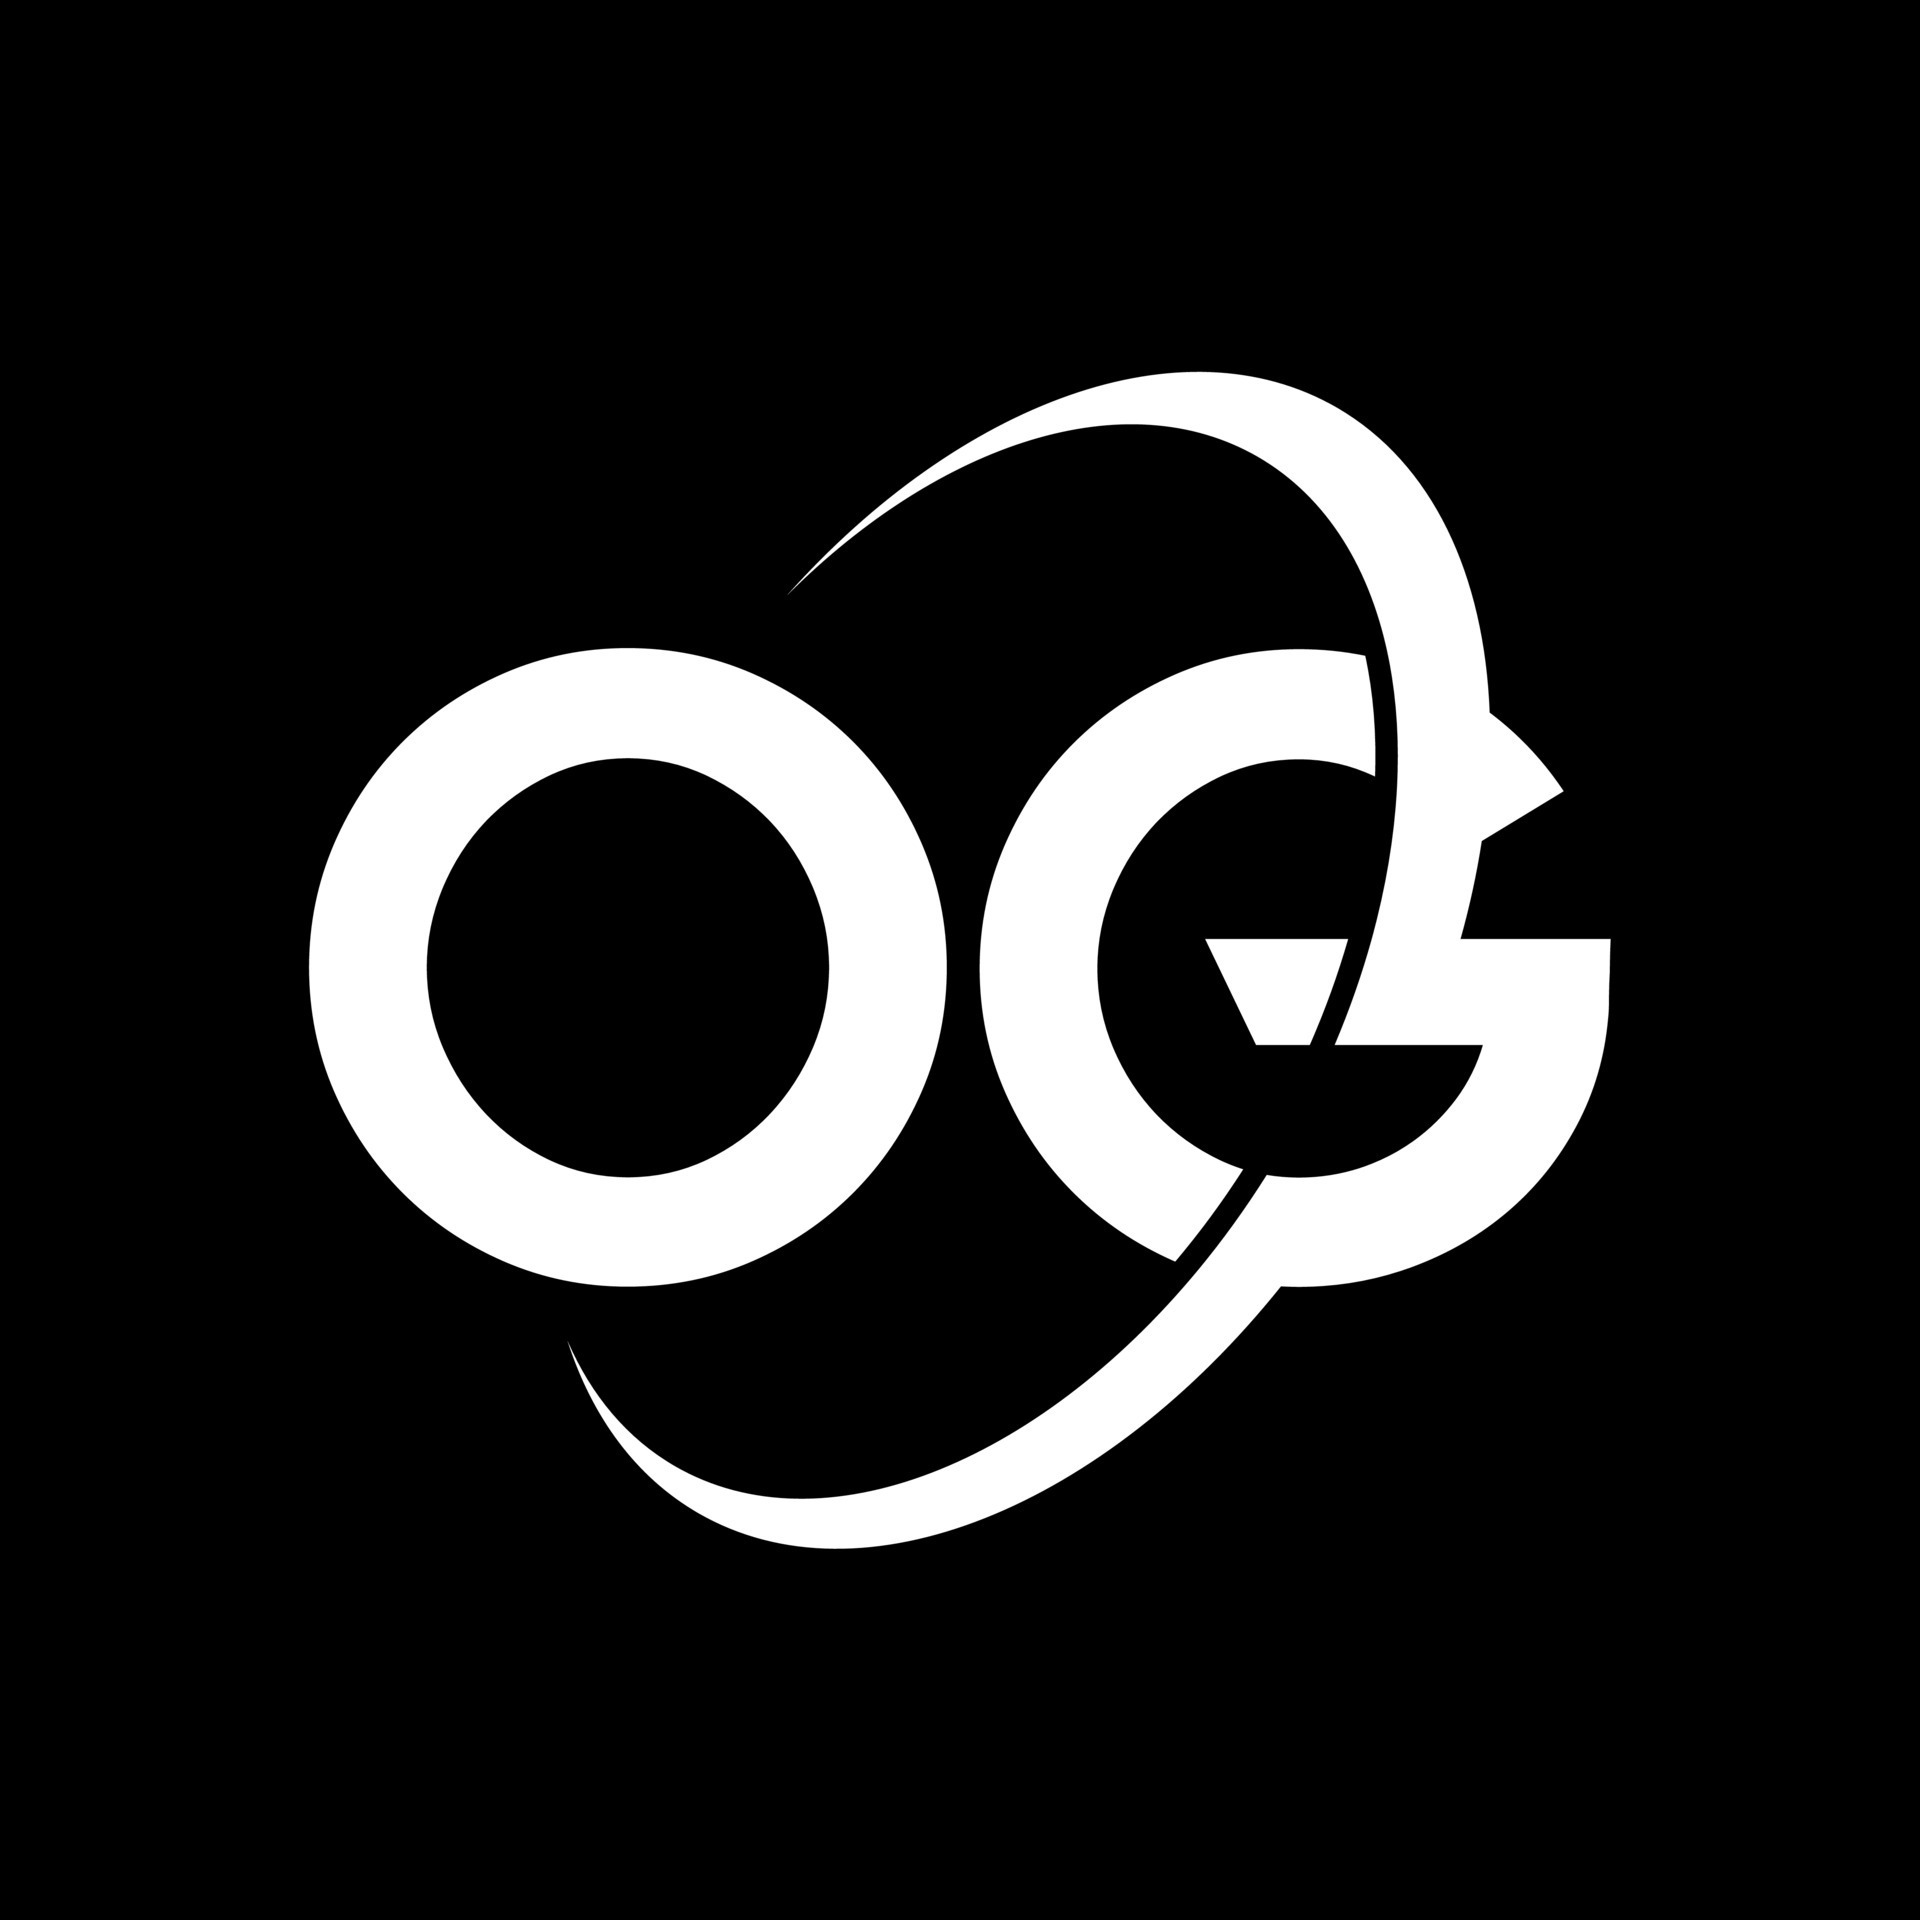 Og o. Один ОГ логотип. DG logo. QG logo. Gg логотип какого бренда.